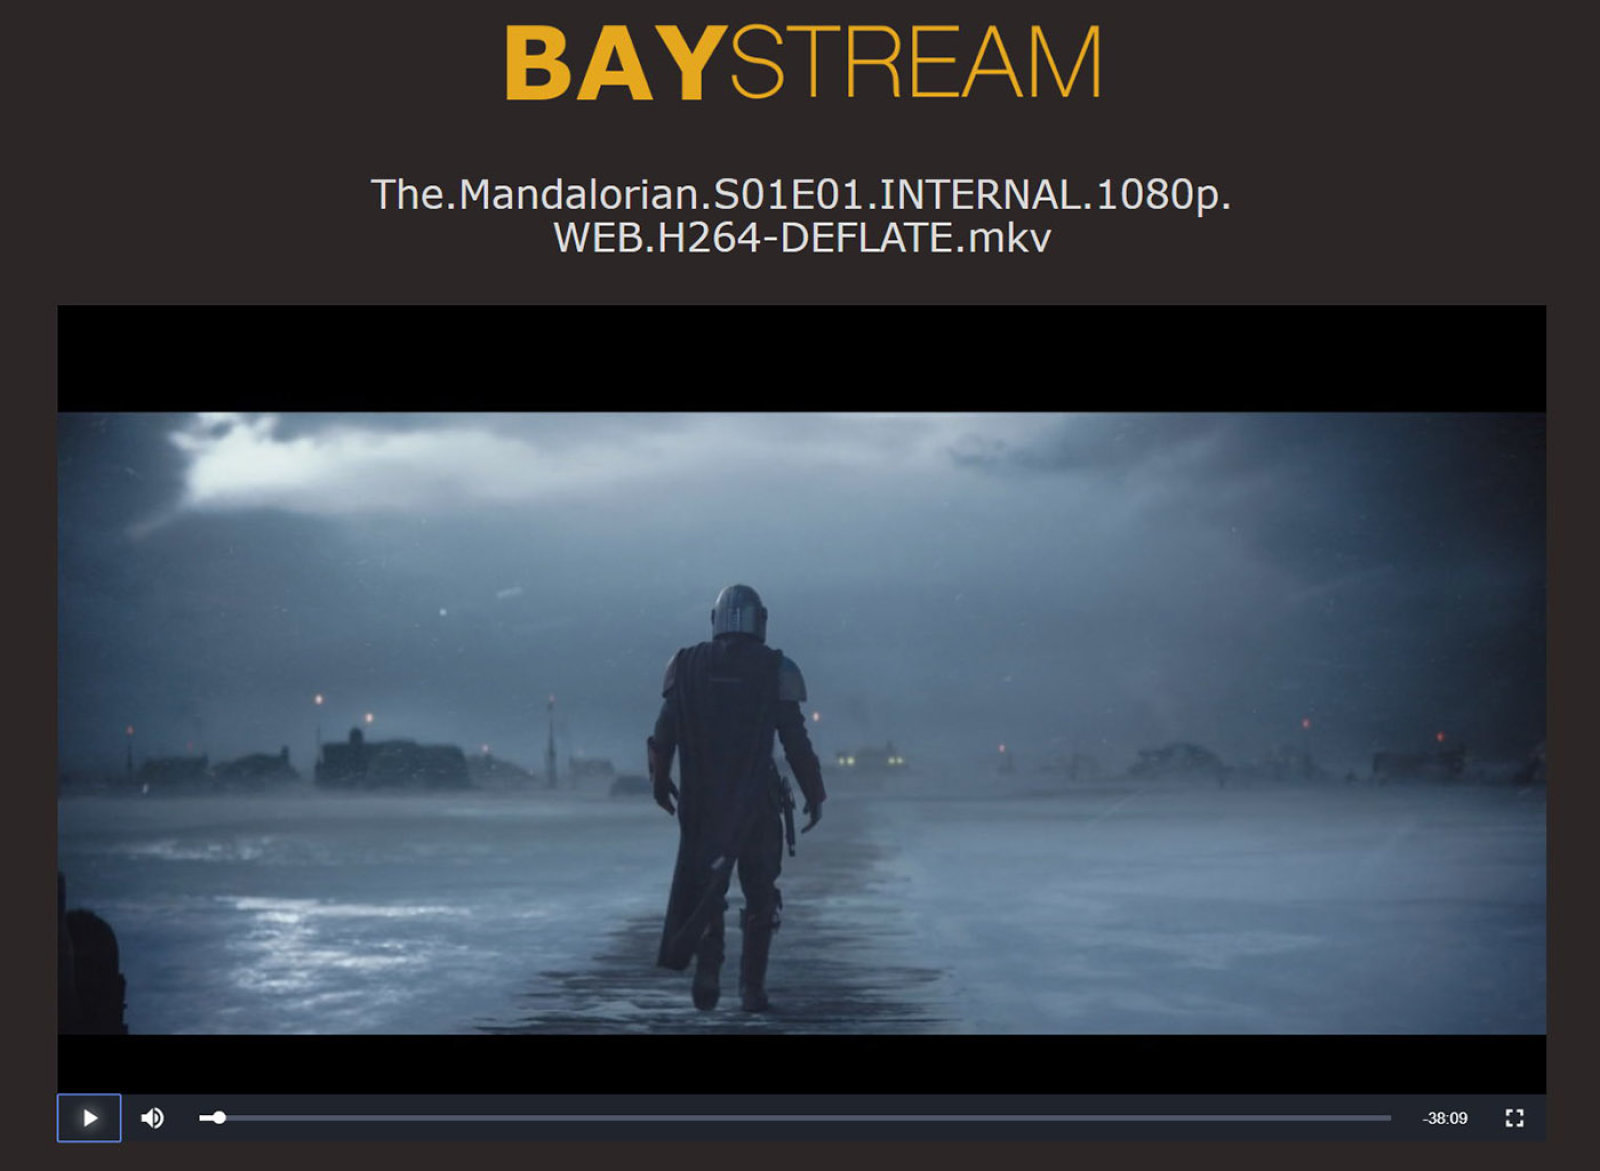 BayStream, czyli piracki serwis VOD od The Pirate Bay